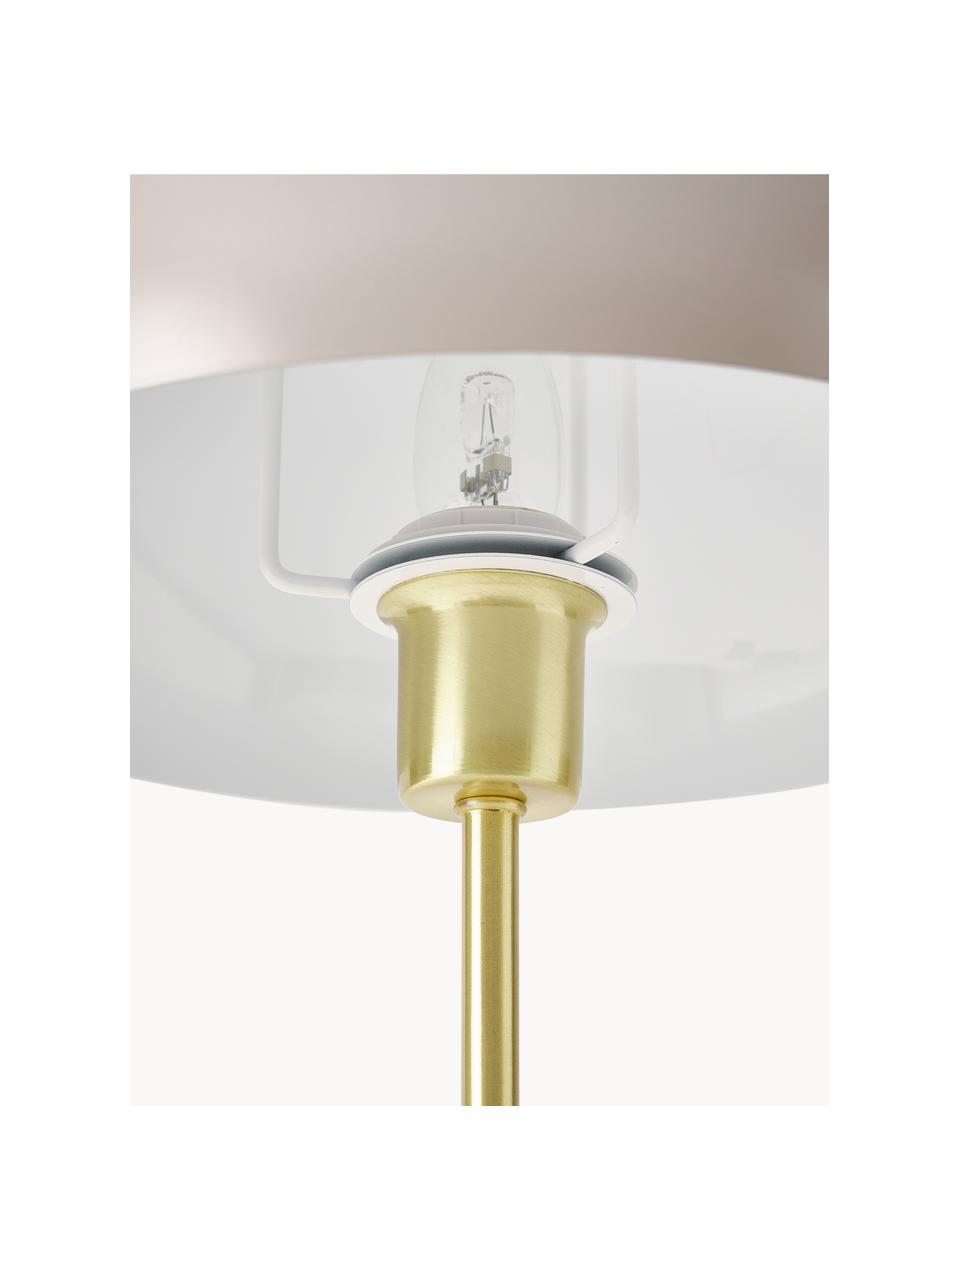 Tischlampe Matilda, Lampenschirm: Metall, pulverbeschichtet, Beige, Goldfarben, Ø 29 x H 45 cm